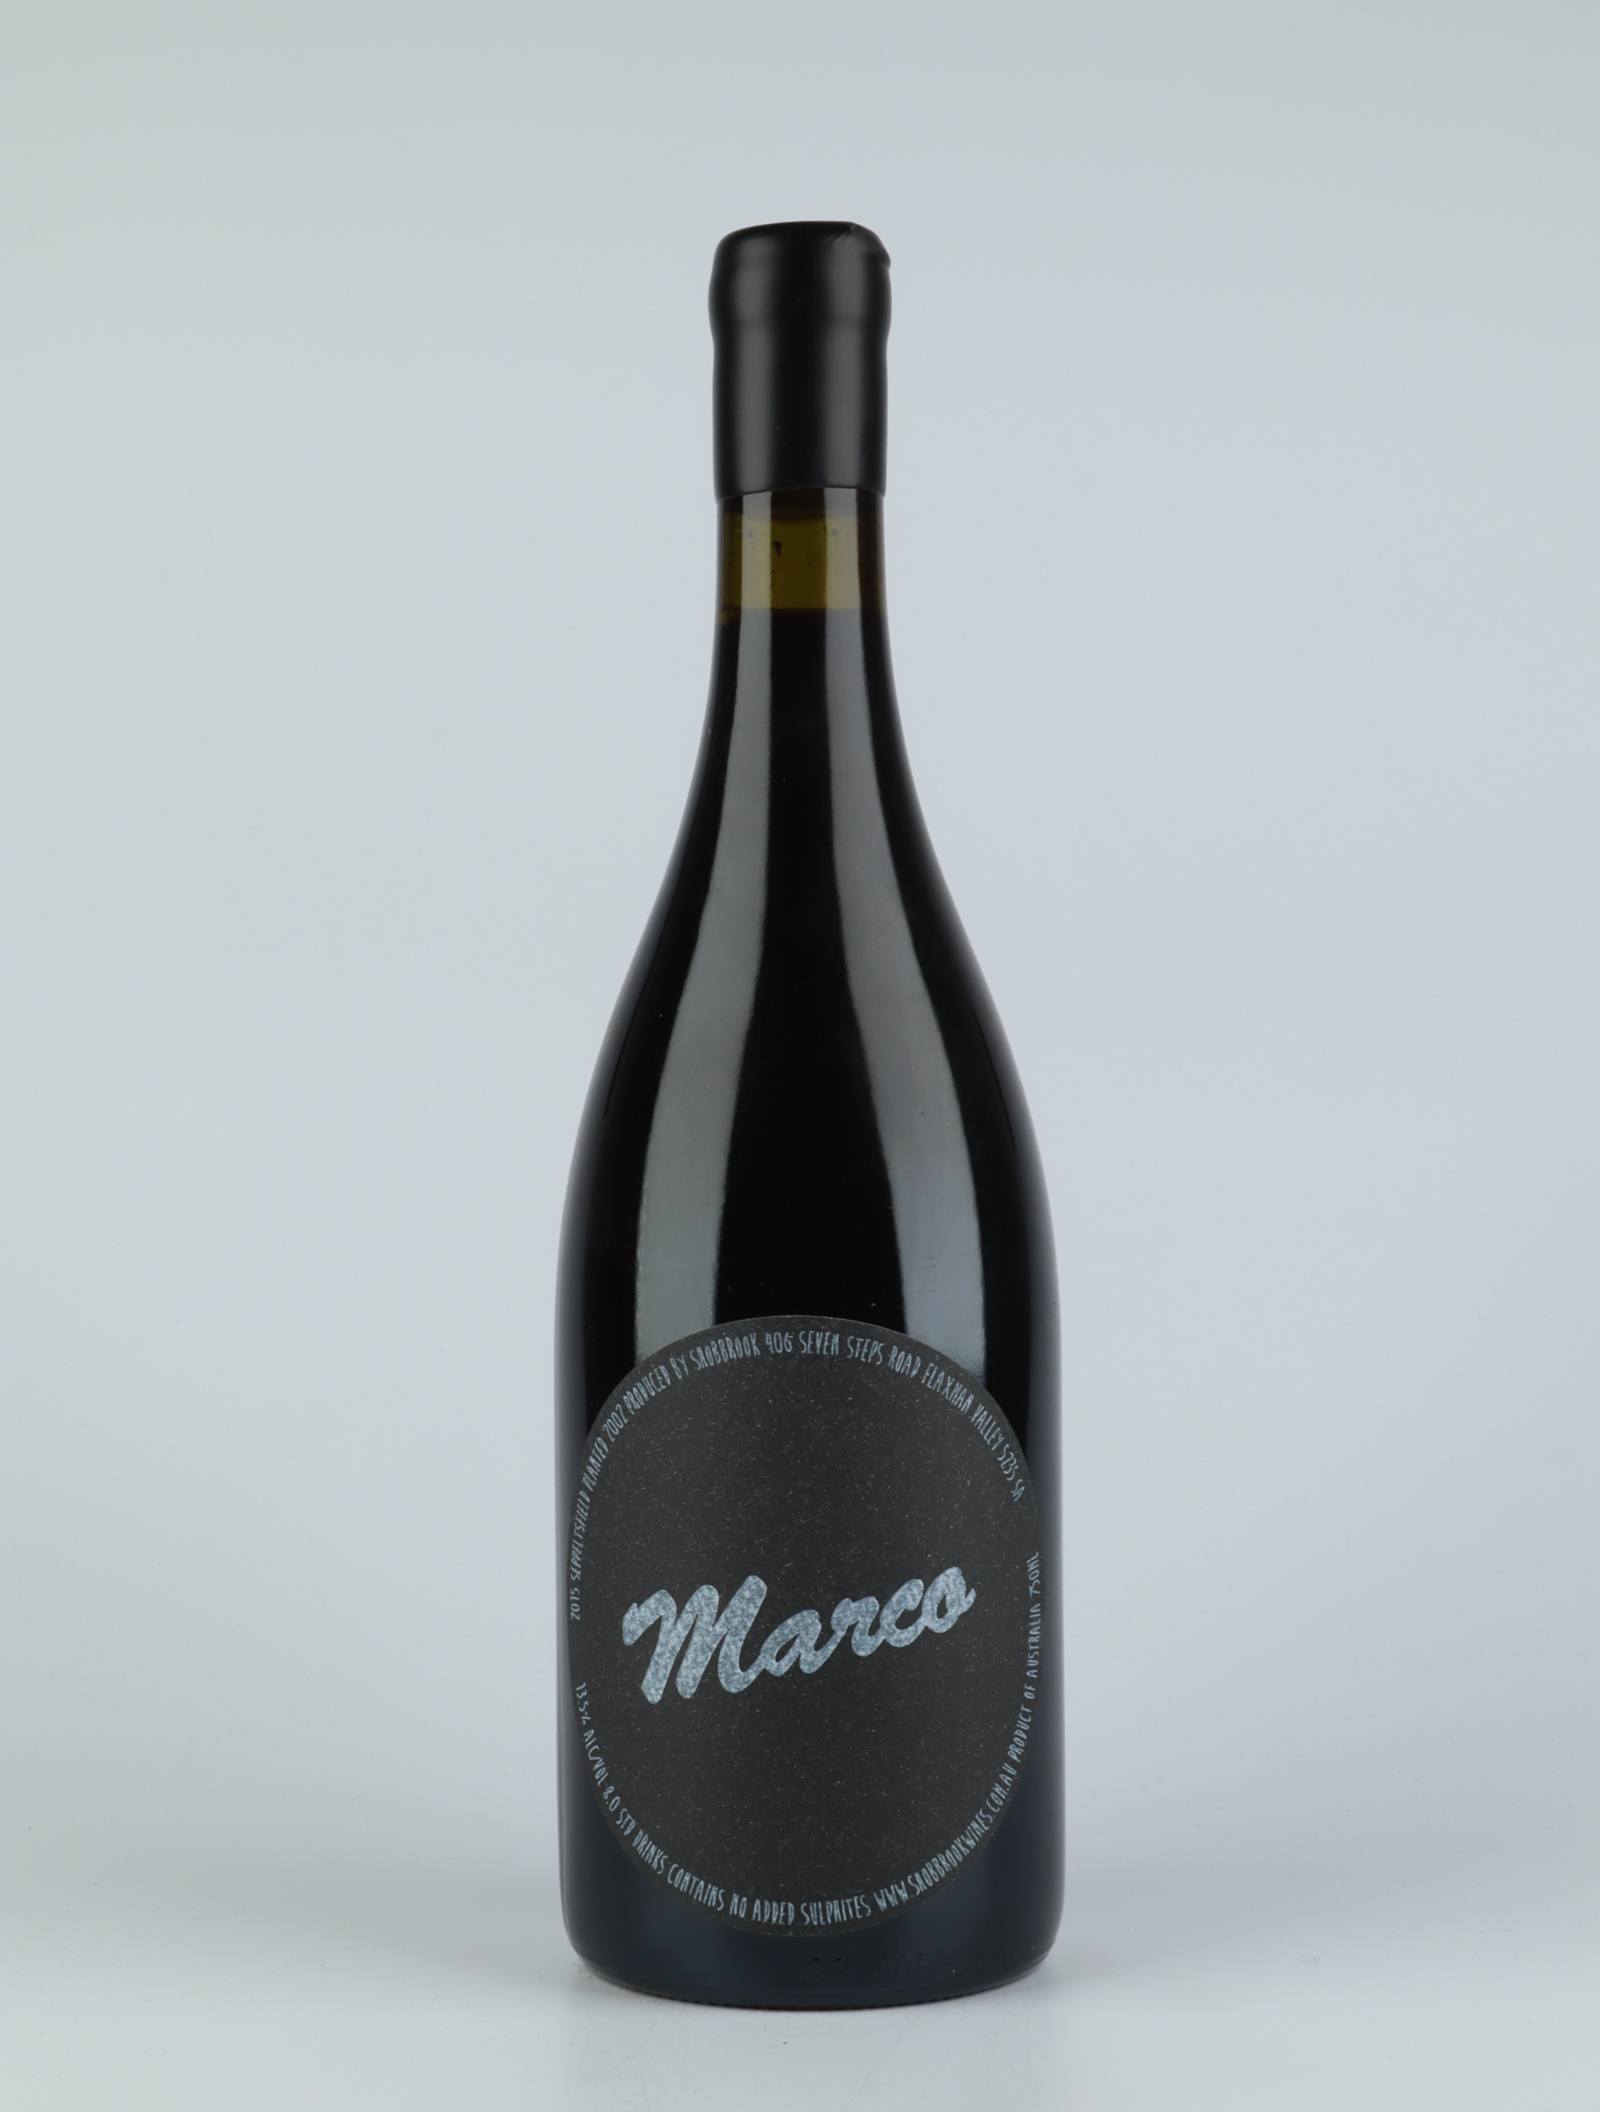 En flaske 2015 Marco Rødvin fra Tom Shobbrook, Barossa Valley i Australien